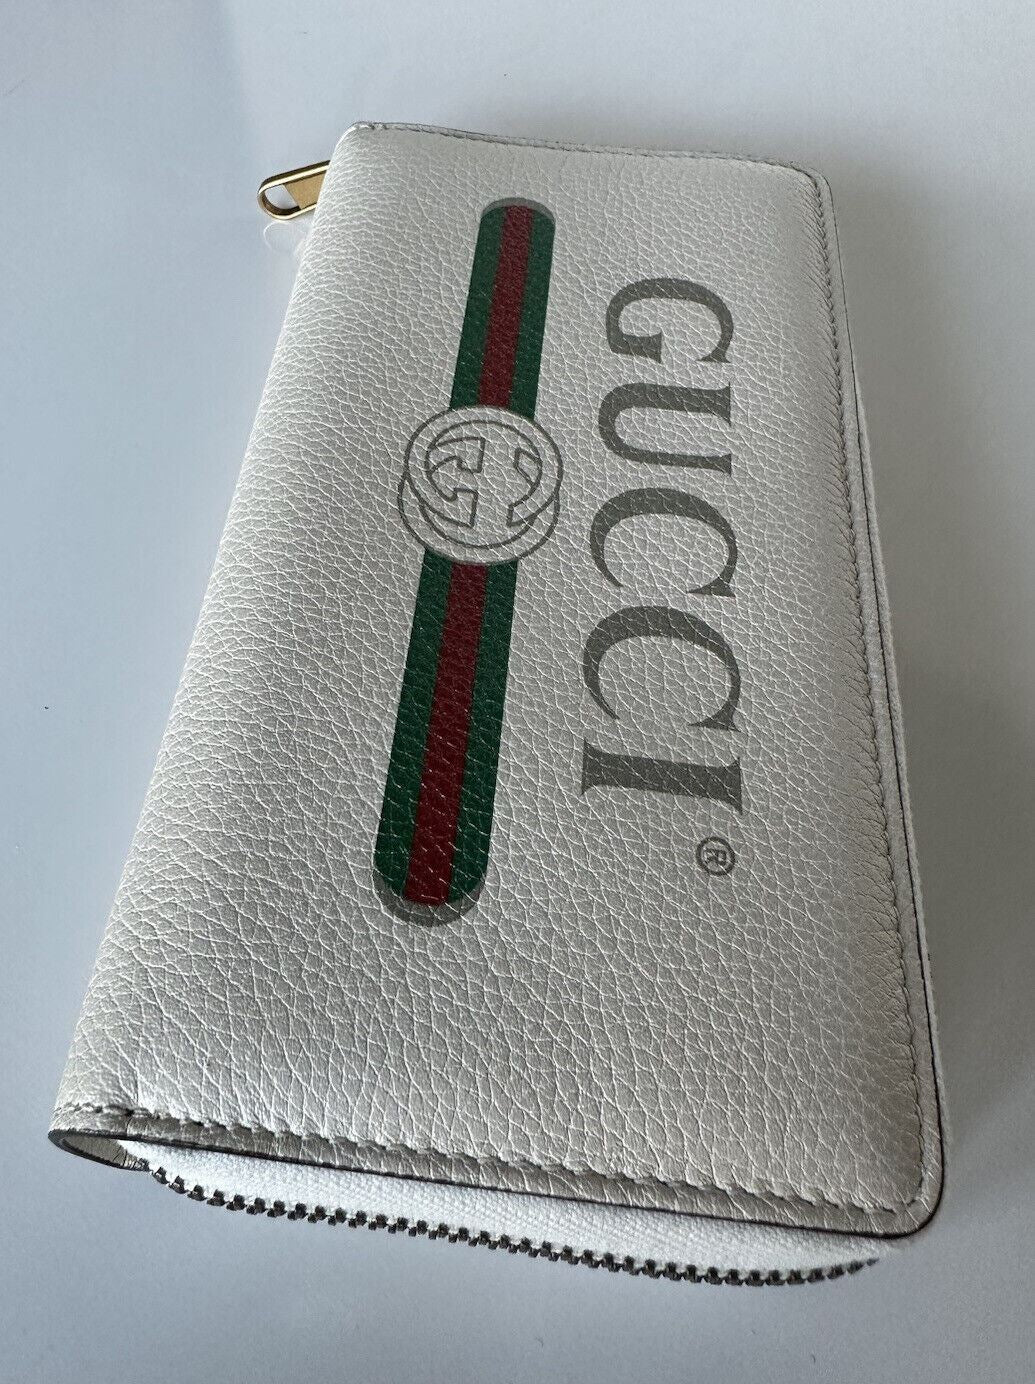 Neu mit Etikett: Gucci G Web Gucci Print Zip Around Ivory Card Medium Wallet 496317 Italien 